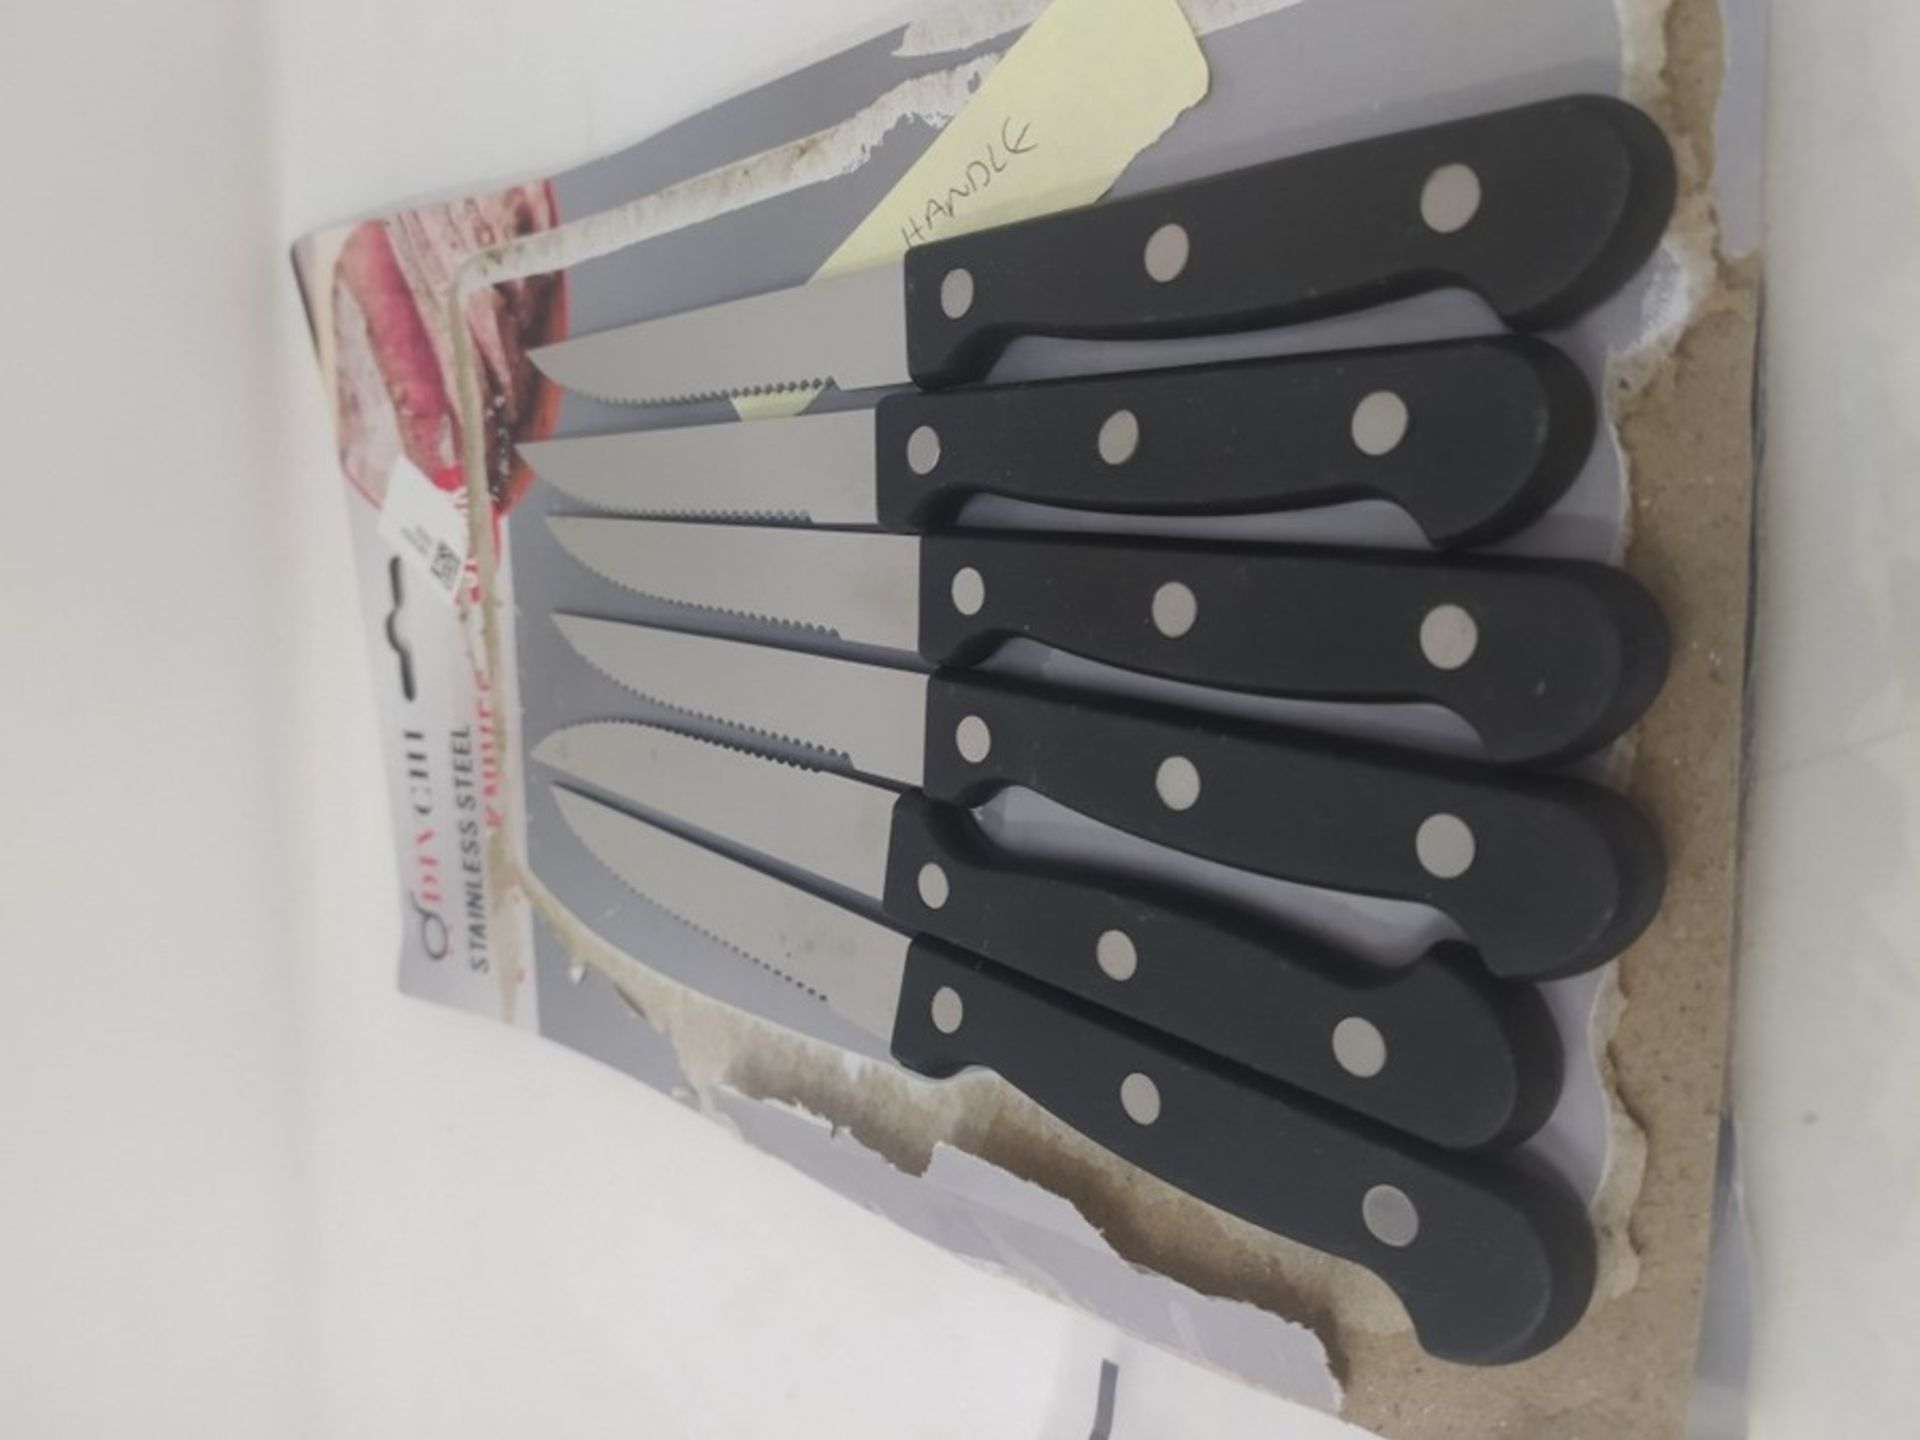 DIVCHI Steak Knives Set of 6 - Steak Knife Set - Serrated Steak Knives Dishwasher Safe - Image 2 of 4